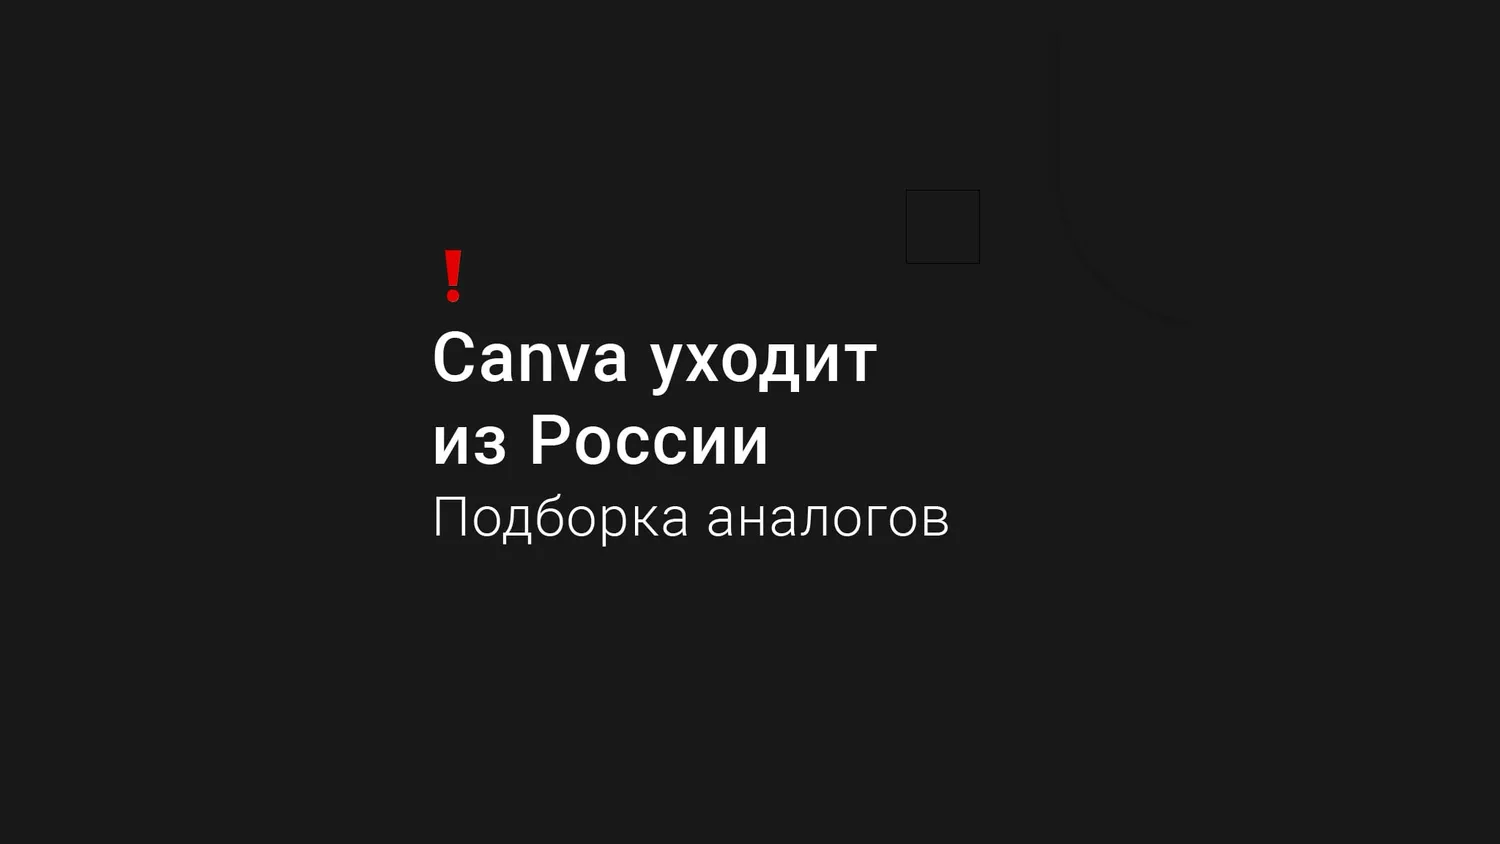 Canva ограничивает доступ пользователям из России